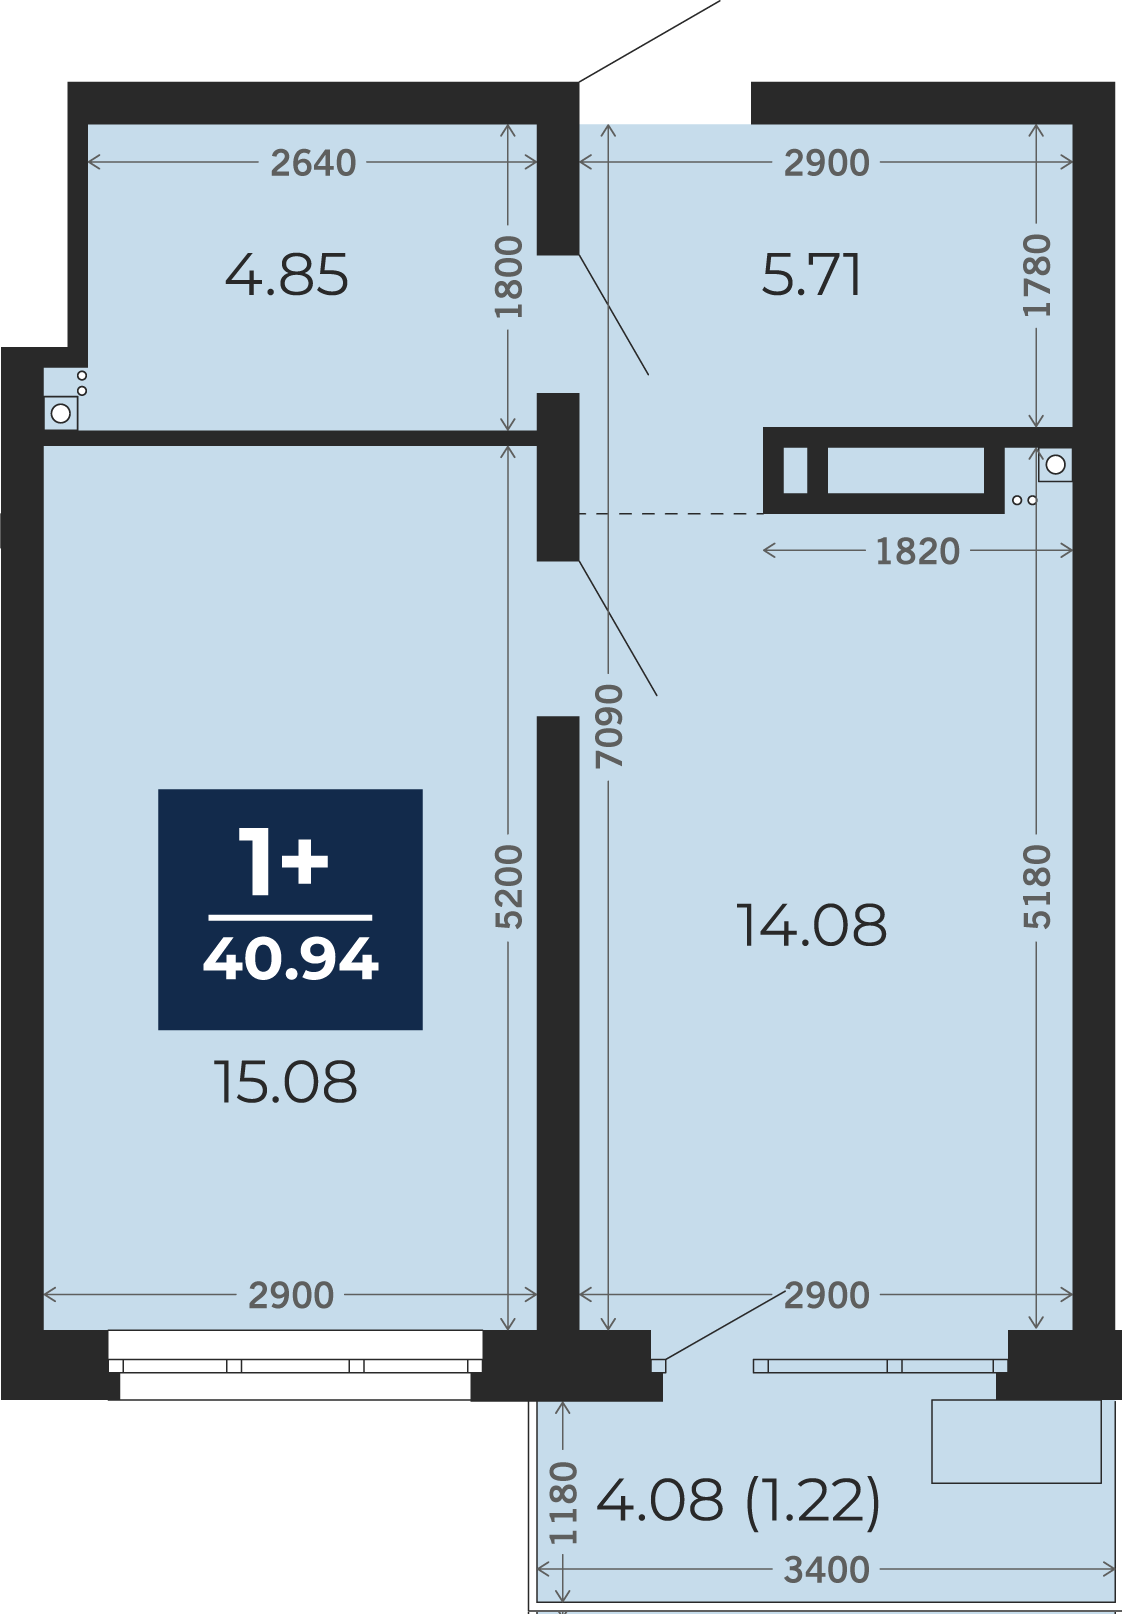 Квартира № 114, 1-комнатная, 40.94 кв. м, 4 этаж